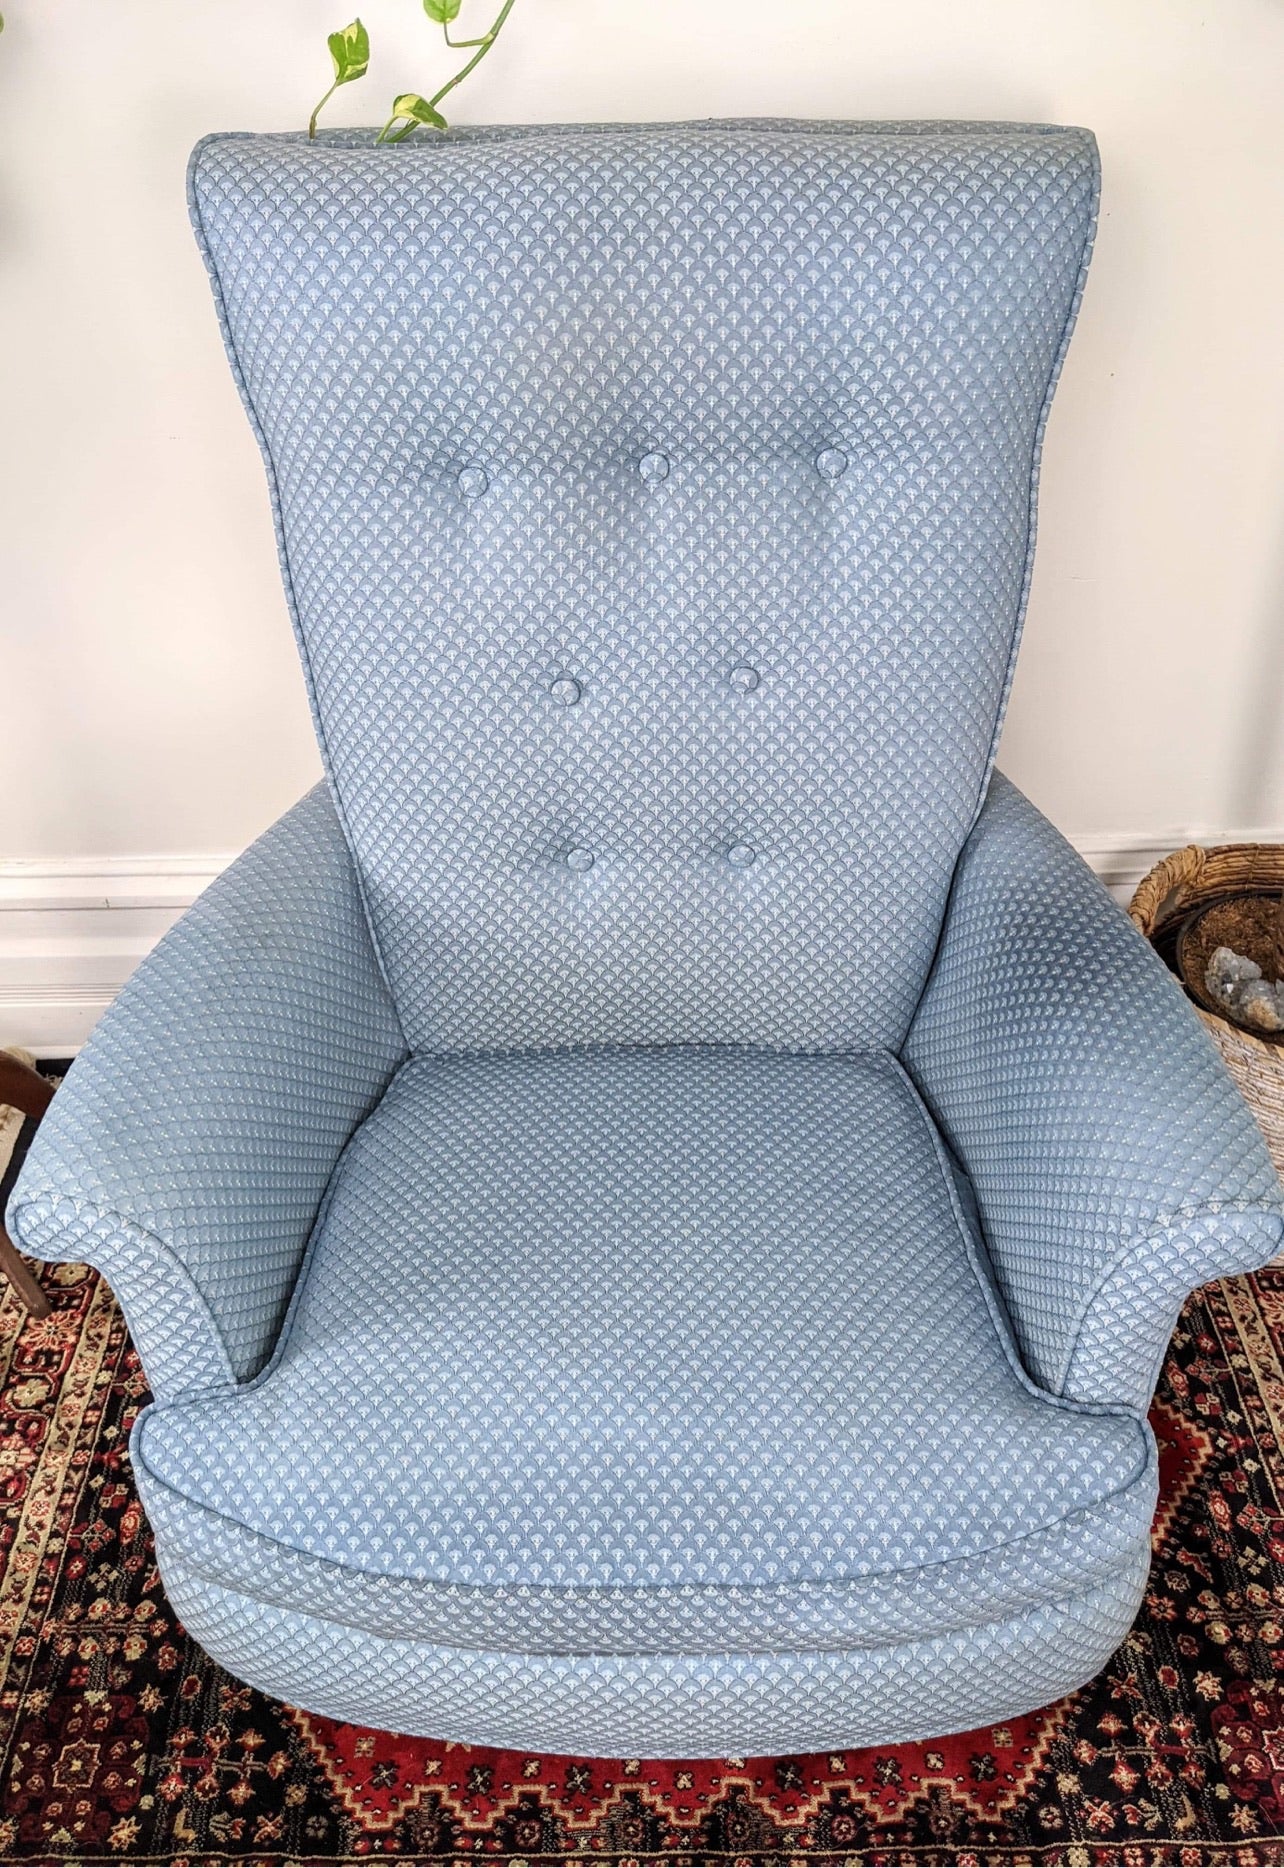 The Blue Cloud Armchair